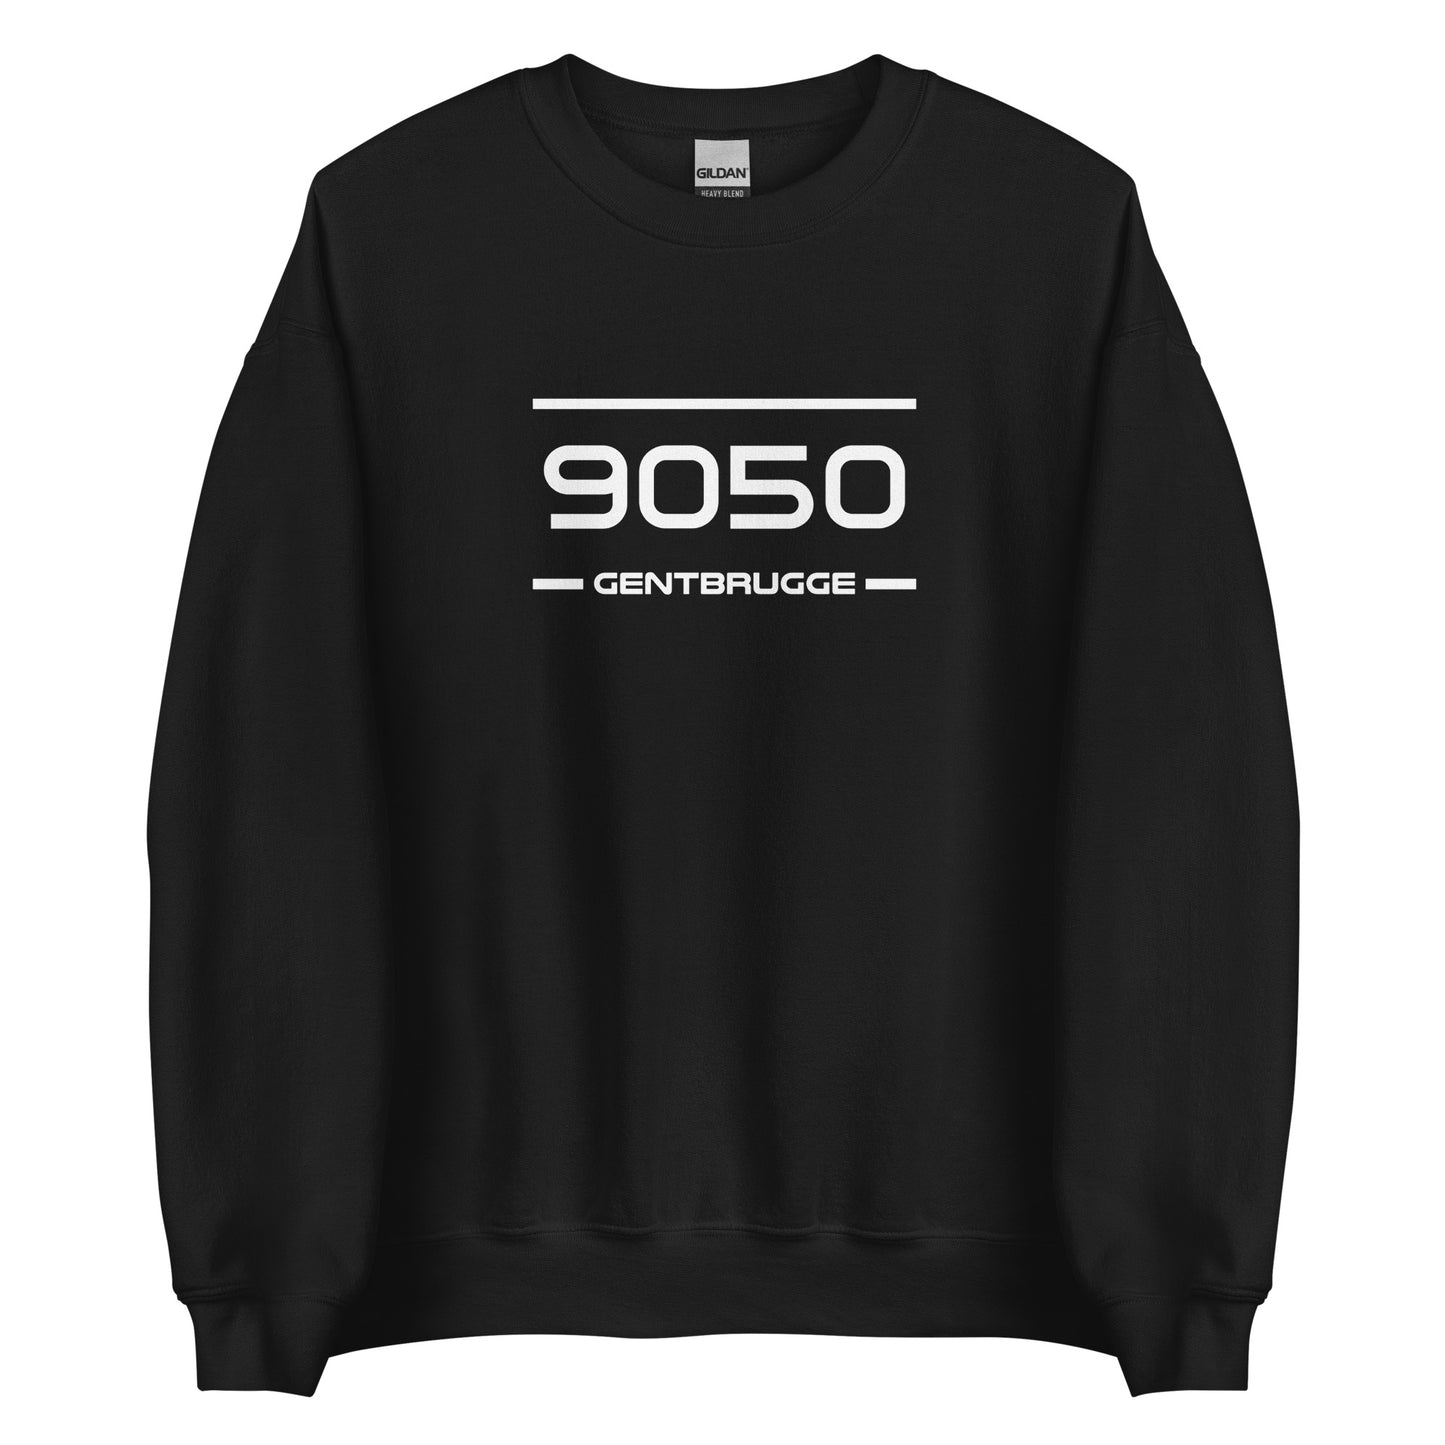 Sweater - 9050 - Gentbrugge (M/V)